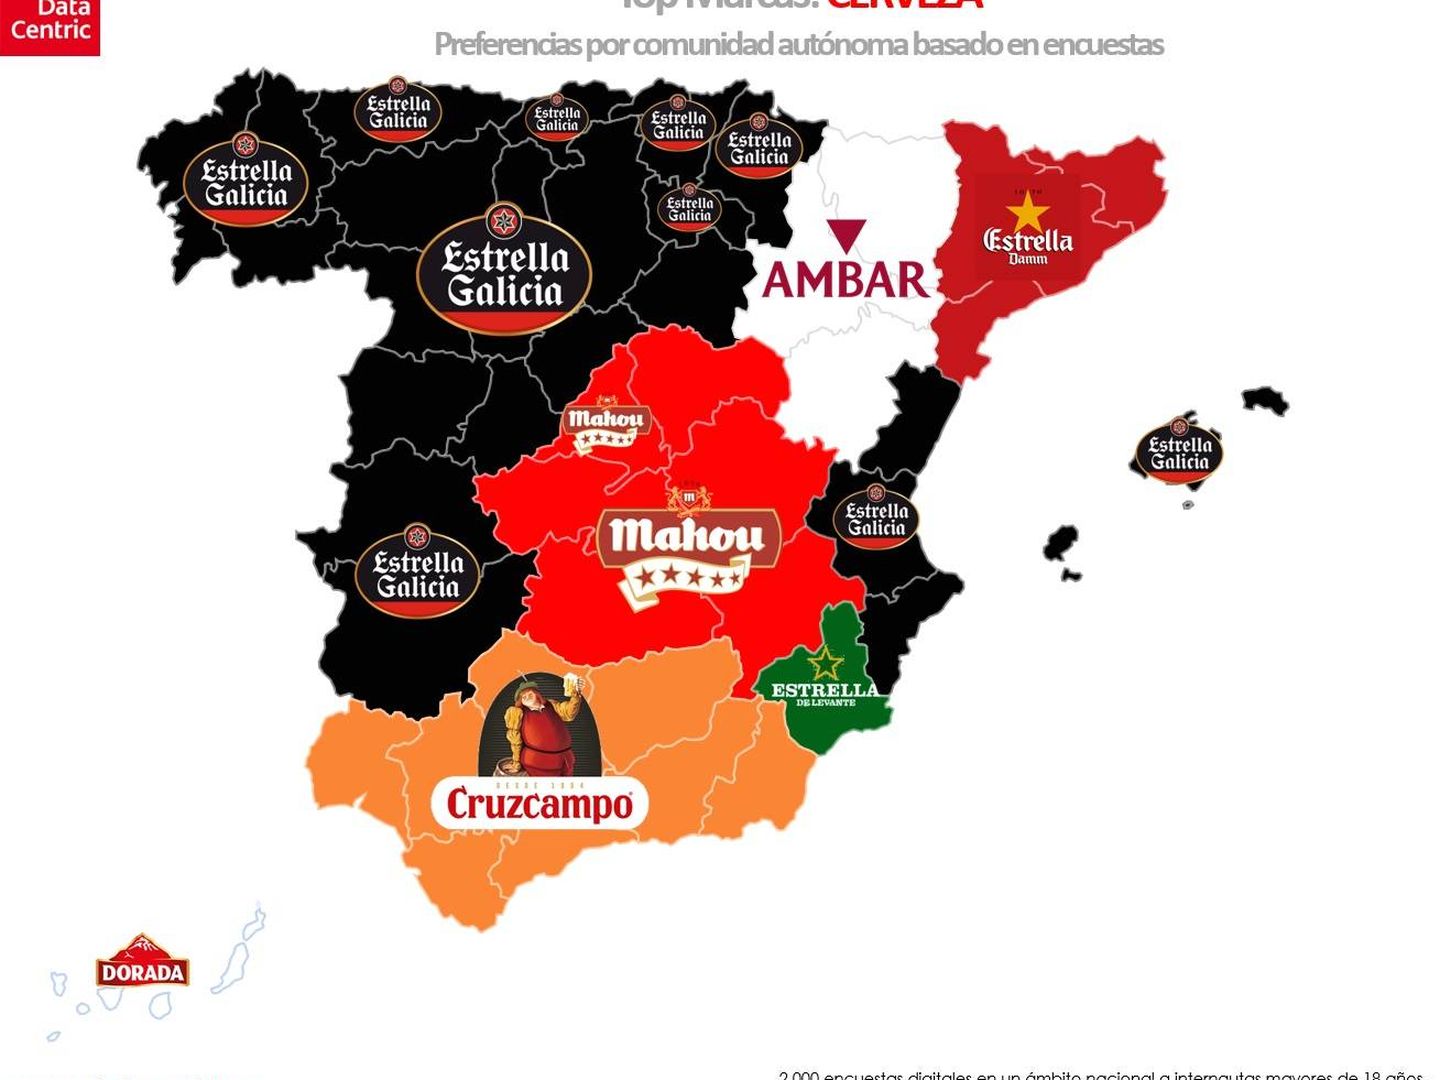 Mapa de cervezas (Datacentric)